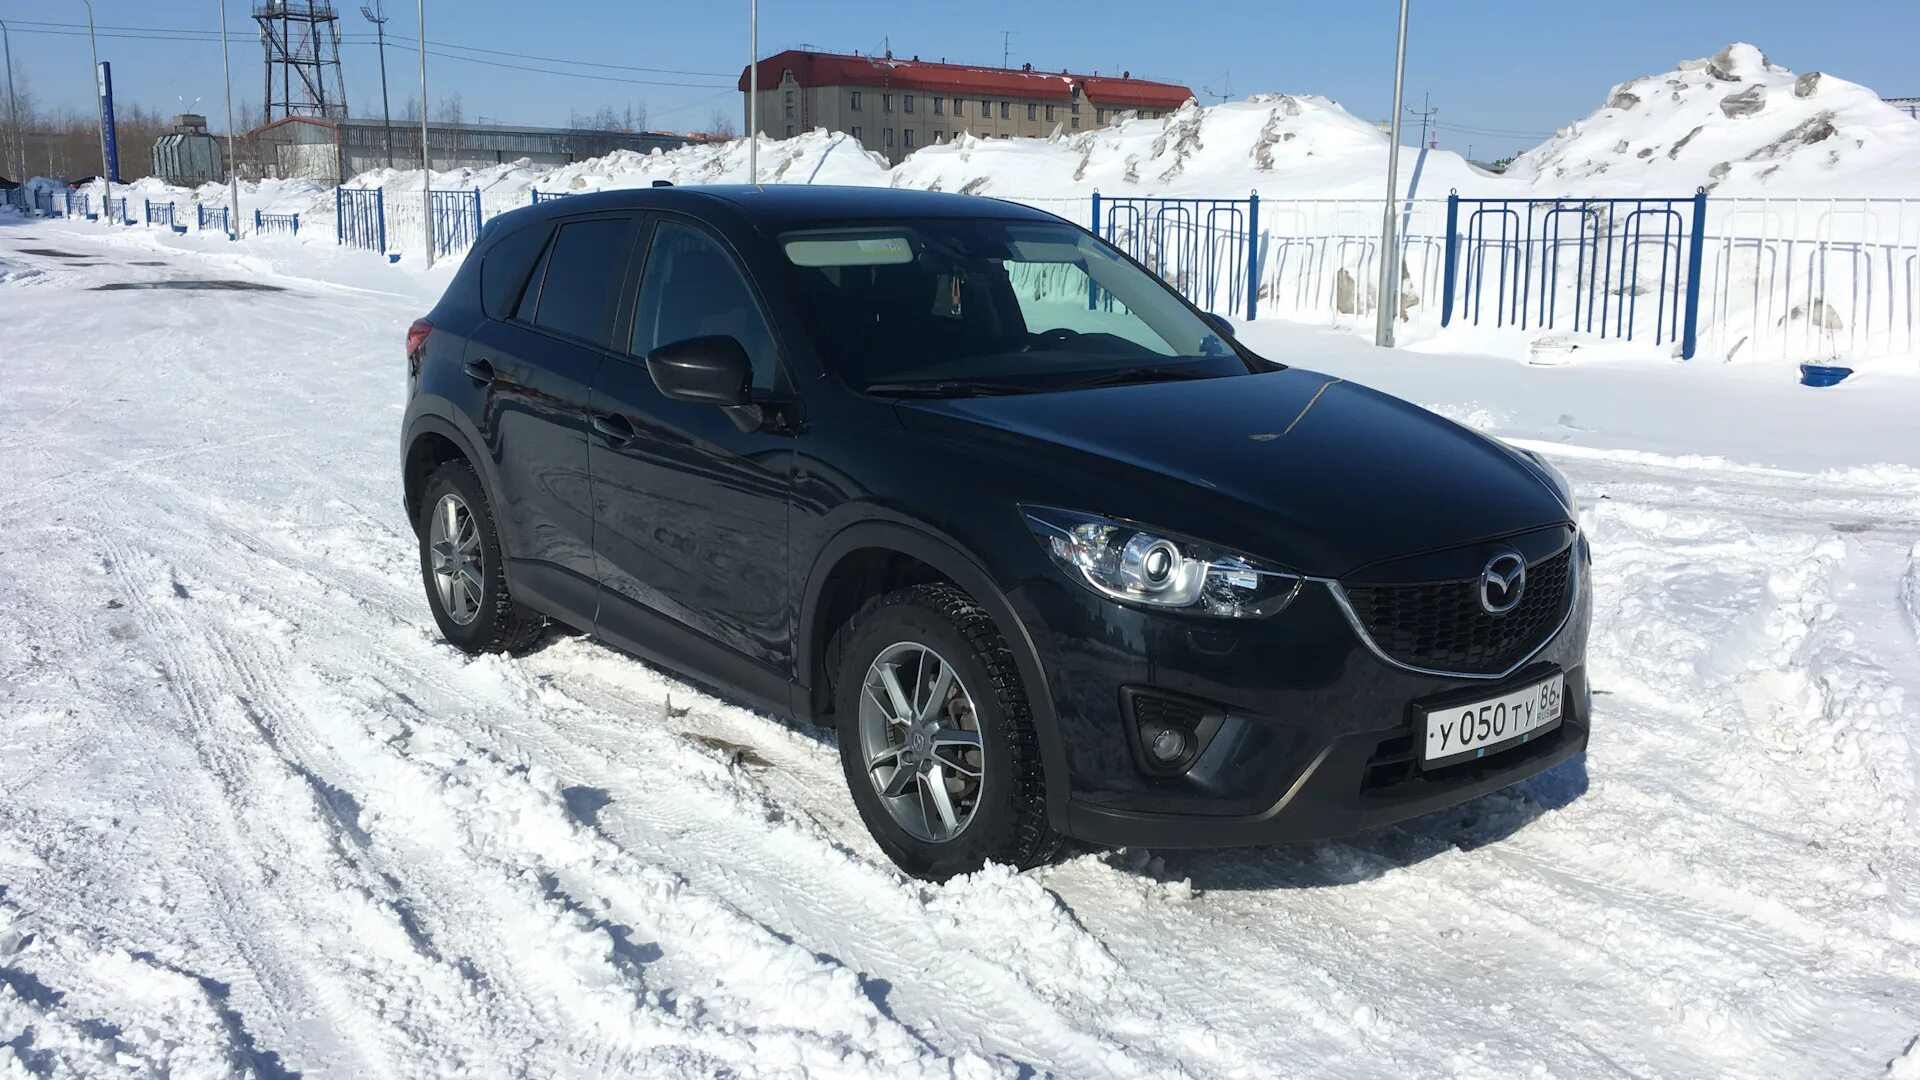 Мазда сх5 зима. Mazda cx5 Winter. Мазда cx5 черная. Мазда СХ-5 зимой. Мазда сх5 челябинск